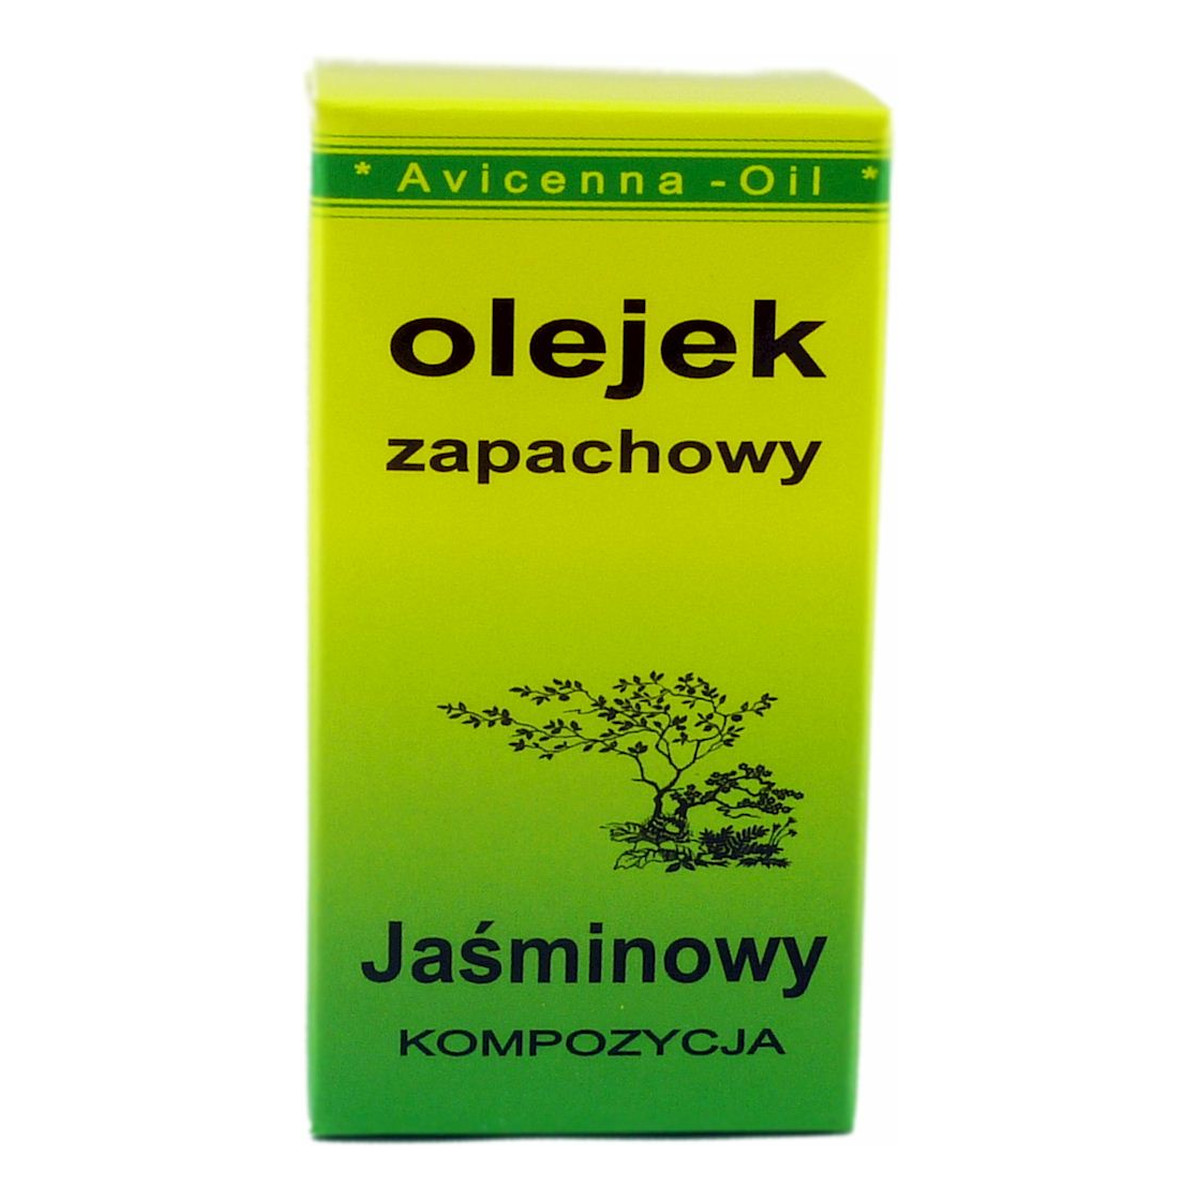 Avicenna-Oil Olejek Zapachowy kompozycja Jaśminowy 7ml